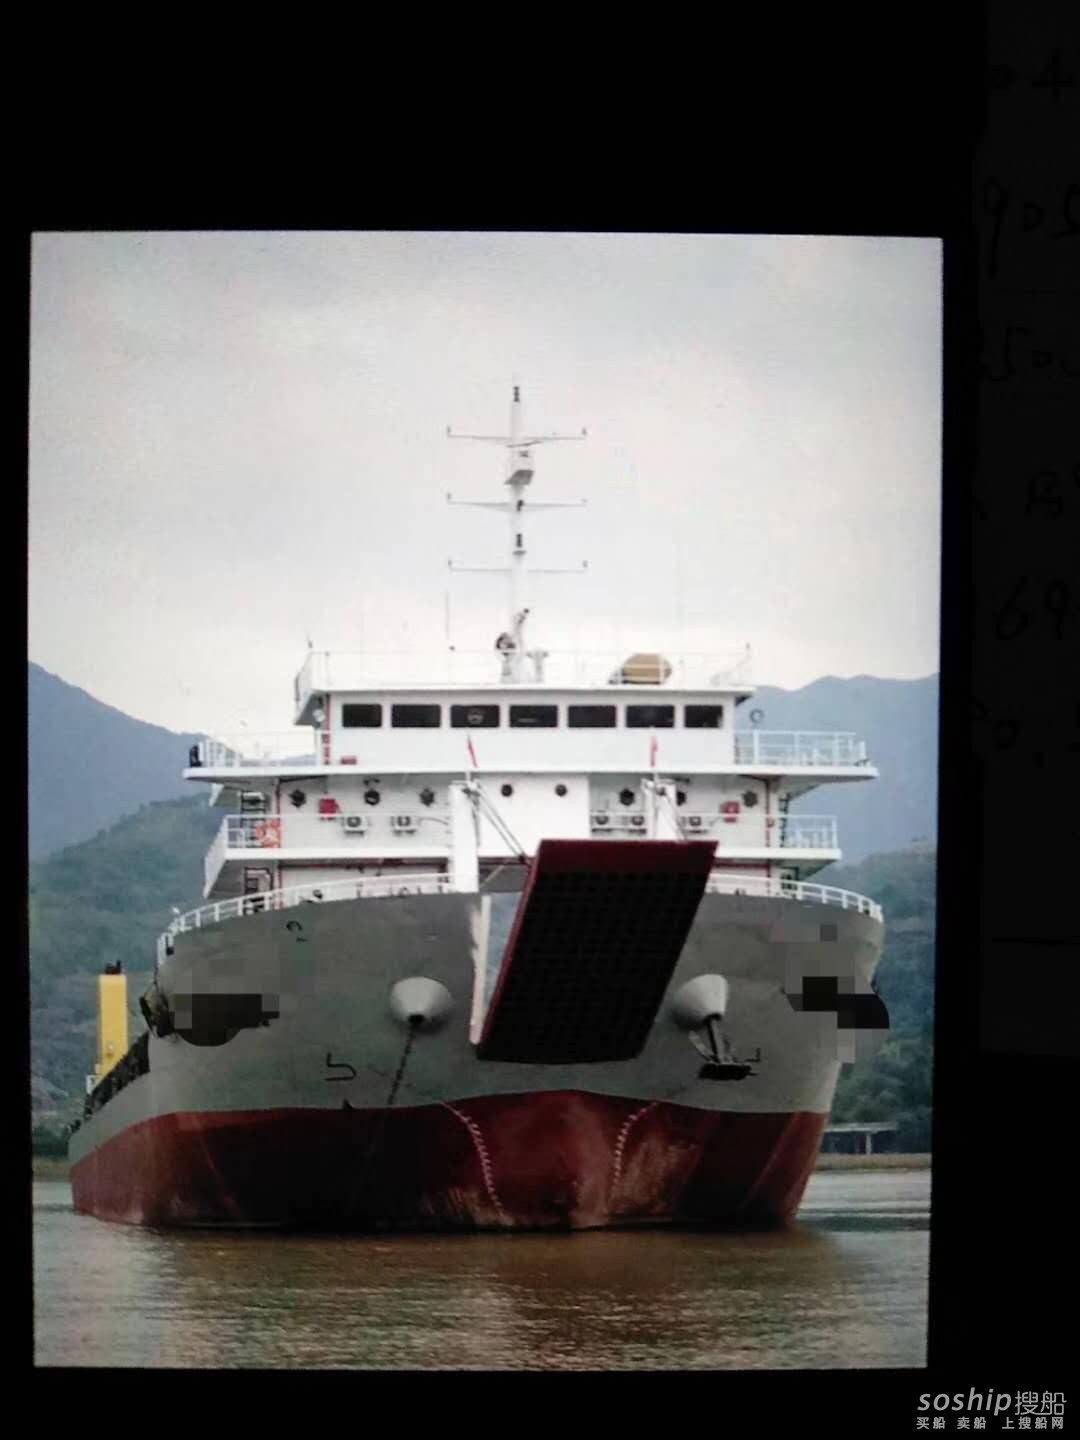 低价出售2009年底5600吨沿海甲板驳船